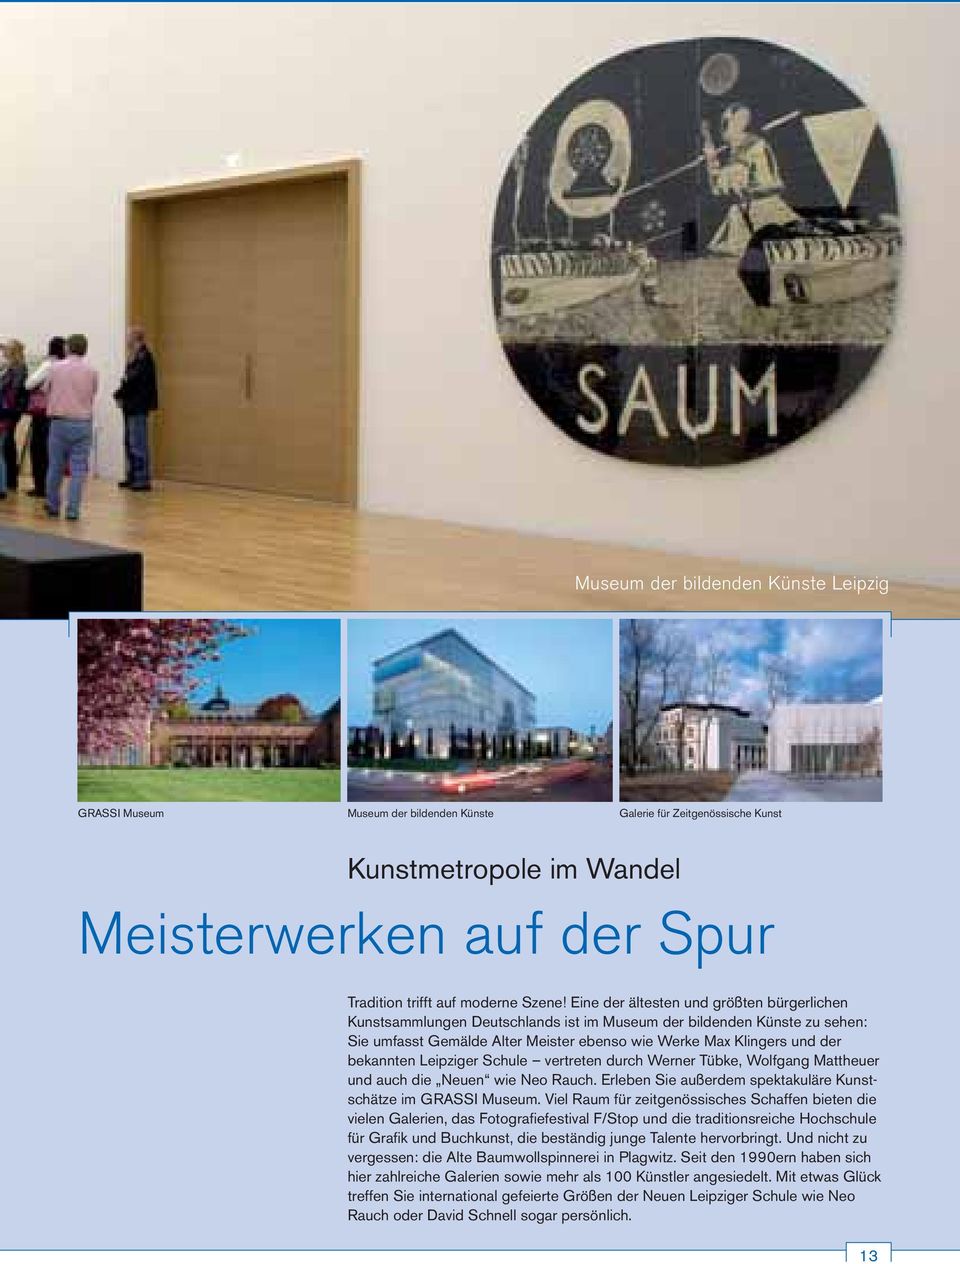 Eine der ältesten und größten bürgerlichen Kunstsammlungen Deutschlands ist im Museum der bildenden Künste zu sehen: Sie umfasst Gemälde Alter Meister ebenso wie Werke Max Klingers und der bekannten